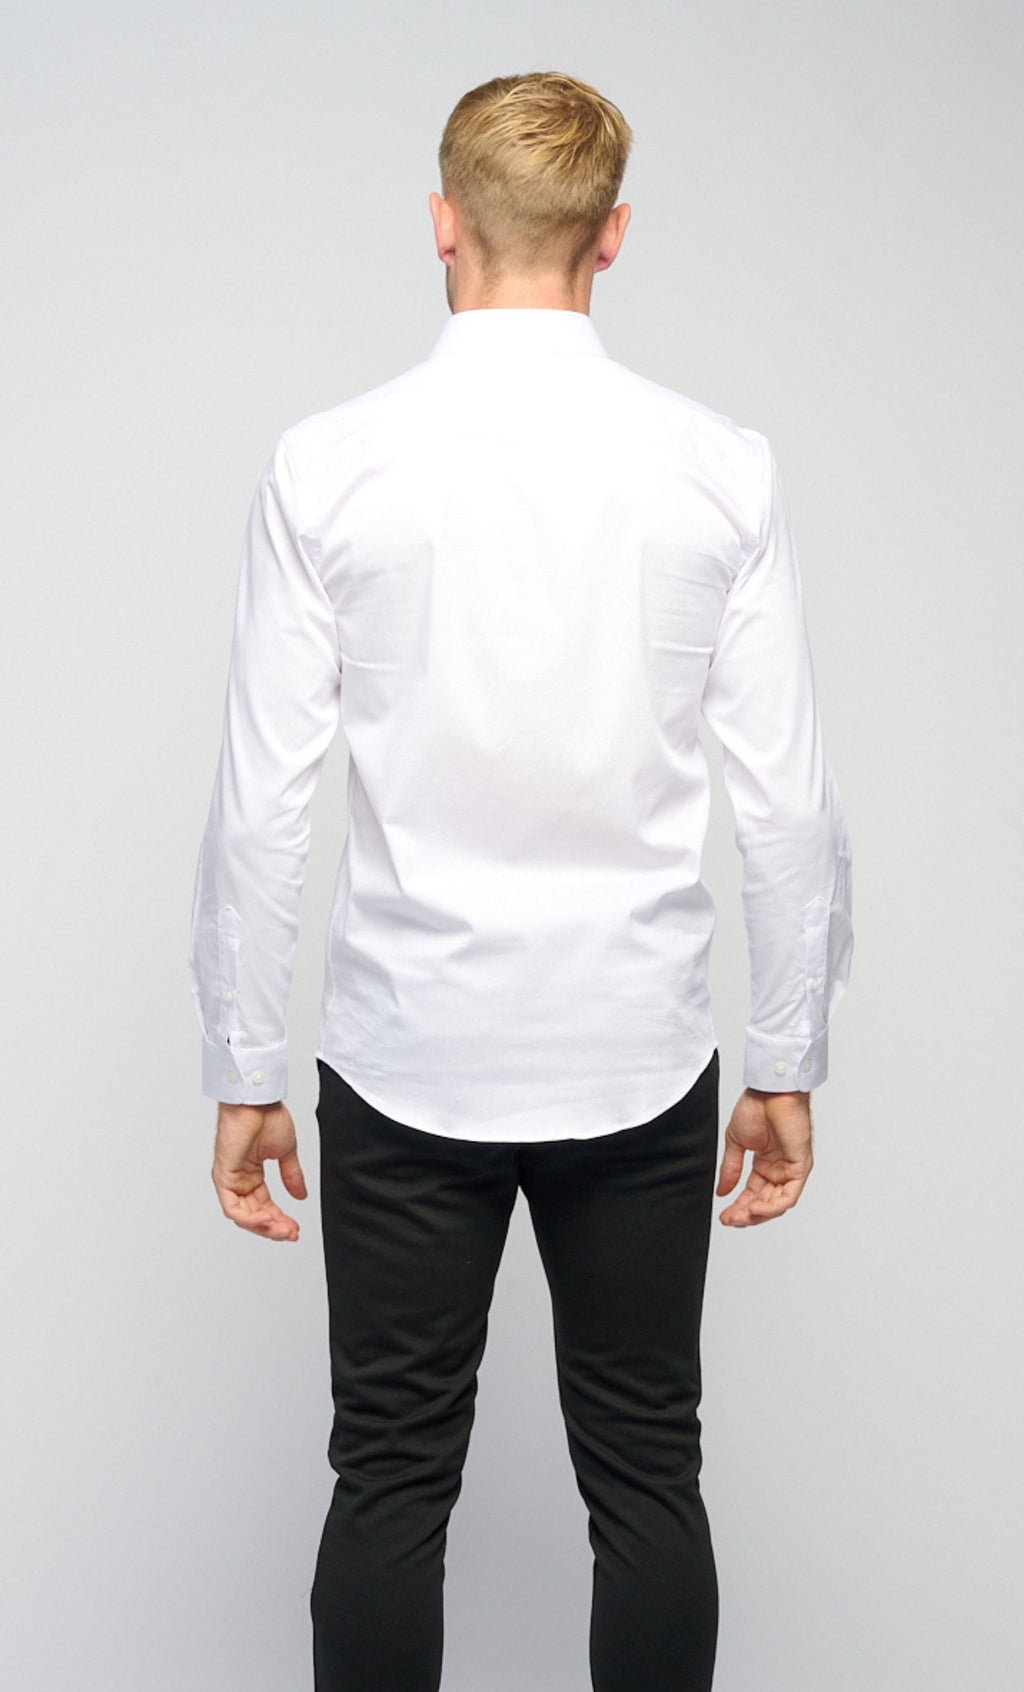 Originalna košulja za izvedbu ™ ️ - Bijela